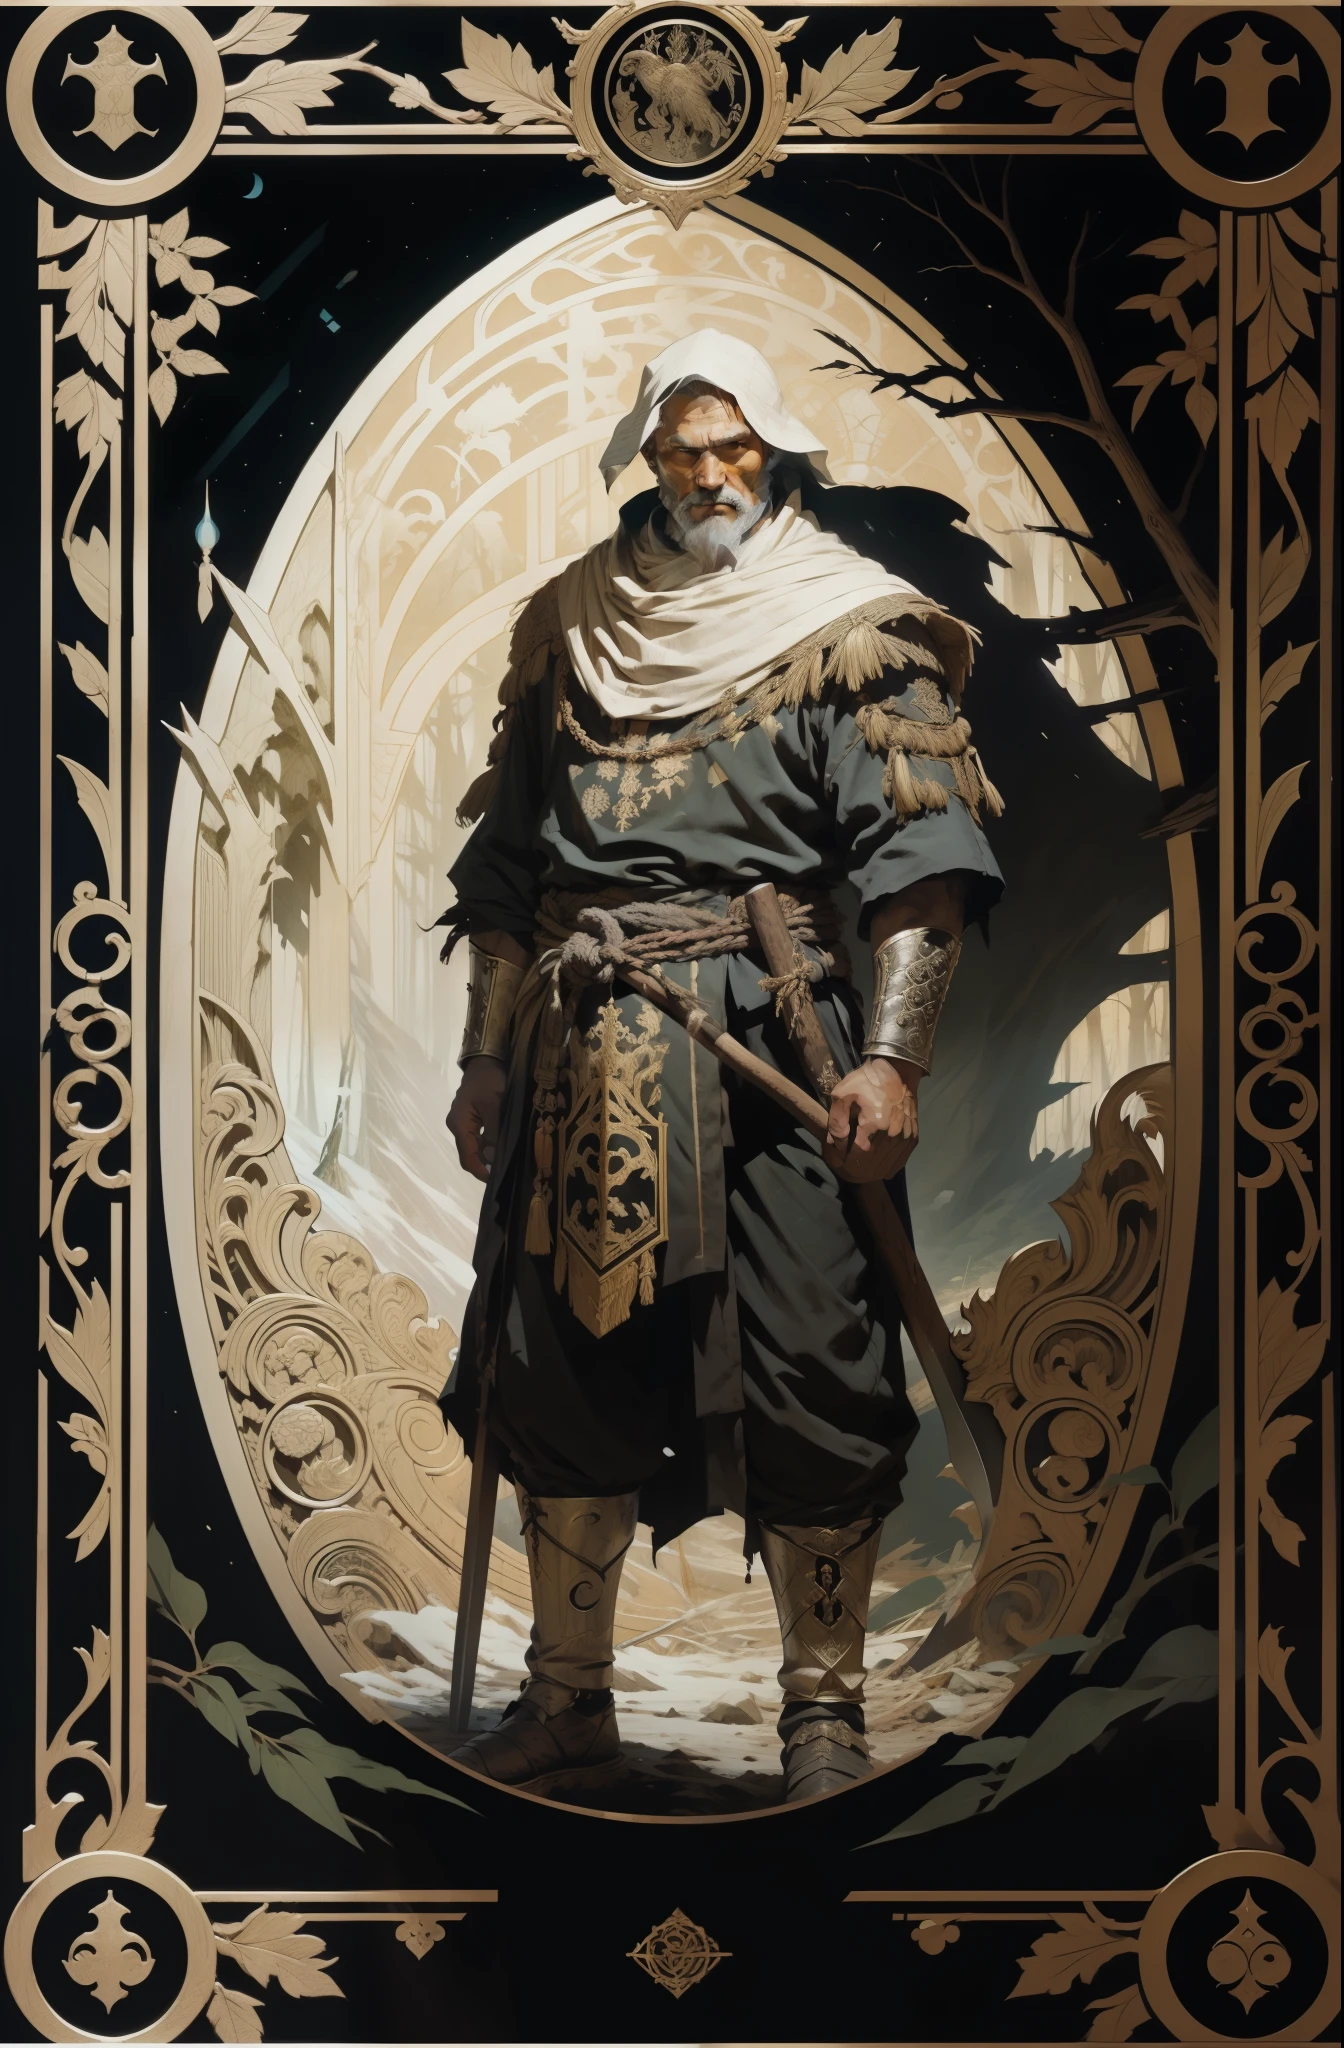 男人, 穿着北方民族的传统服饰, 手里拿着斧头, 黑暗森林背景, 塔罗牌风格, 中世纪图案框架